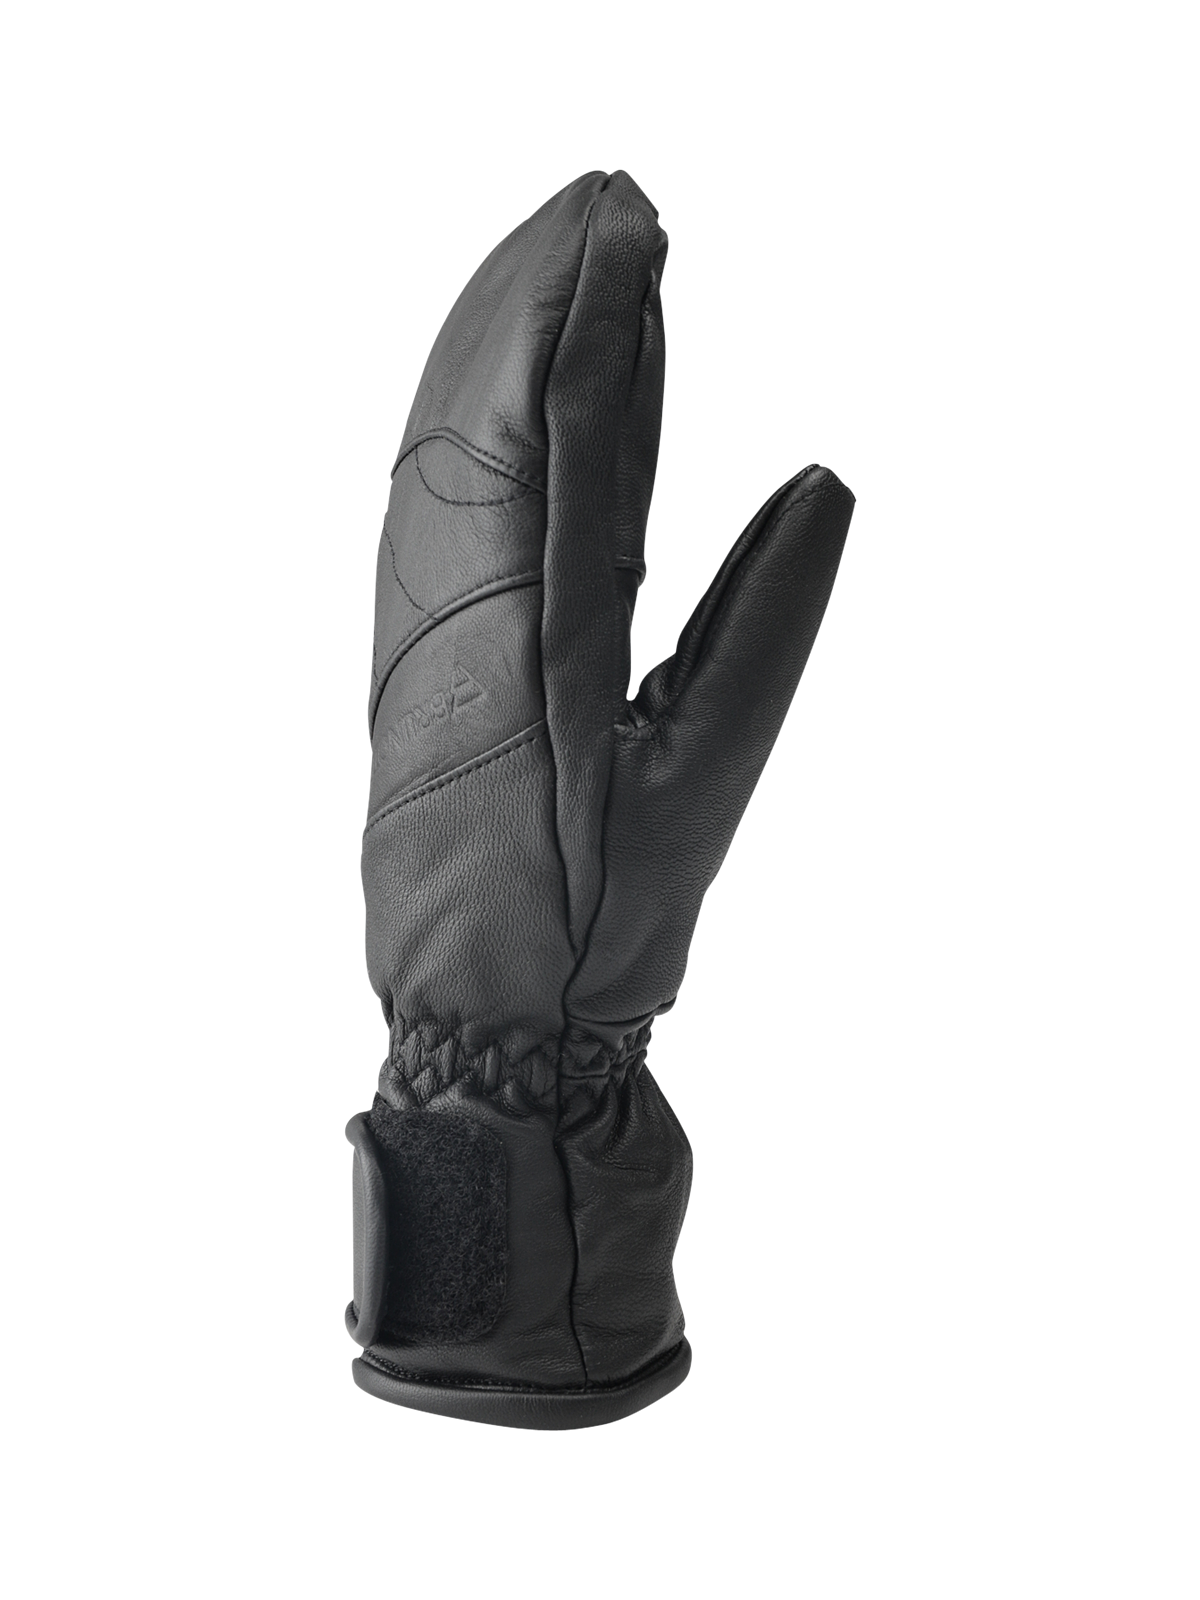 Kitio Uni Glove